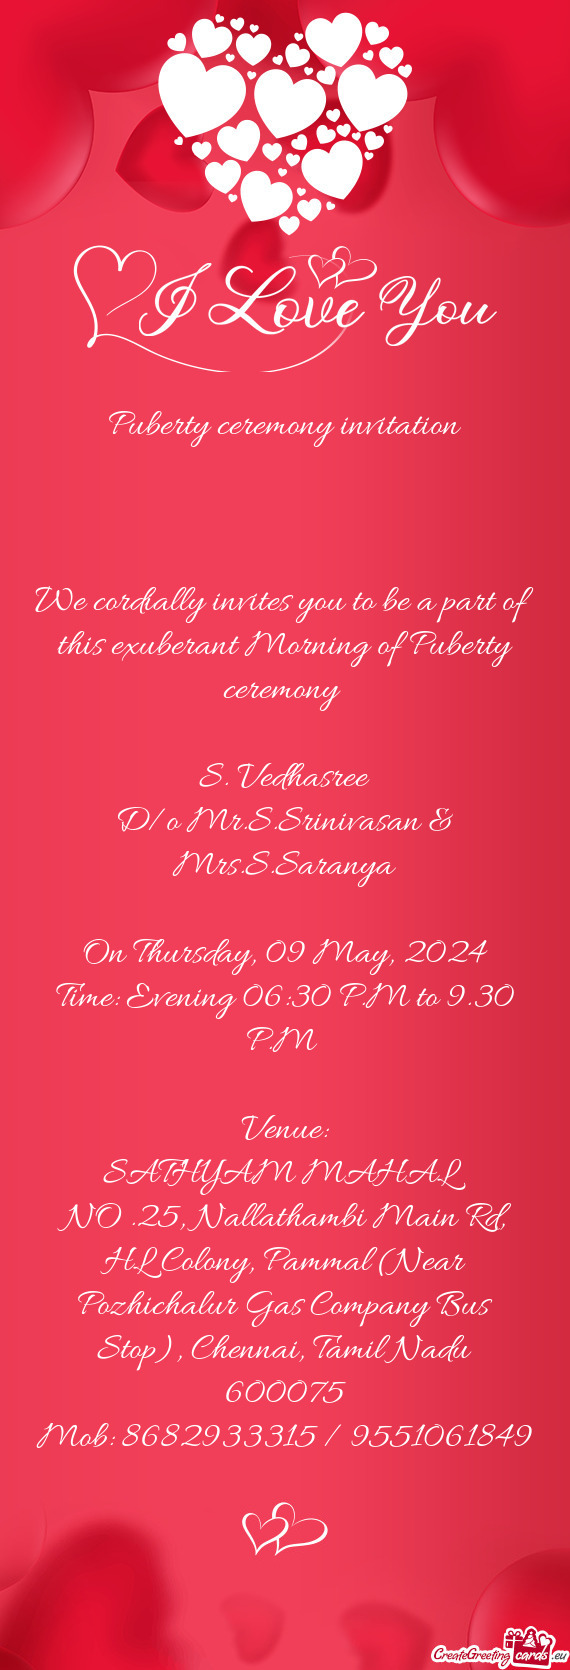 D/o Mr.S.Srinivasan & Mrs.S.Saranya